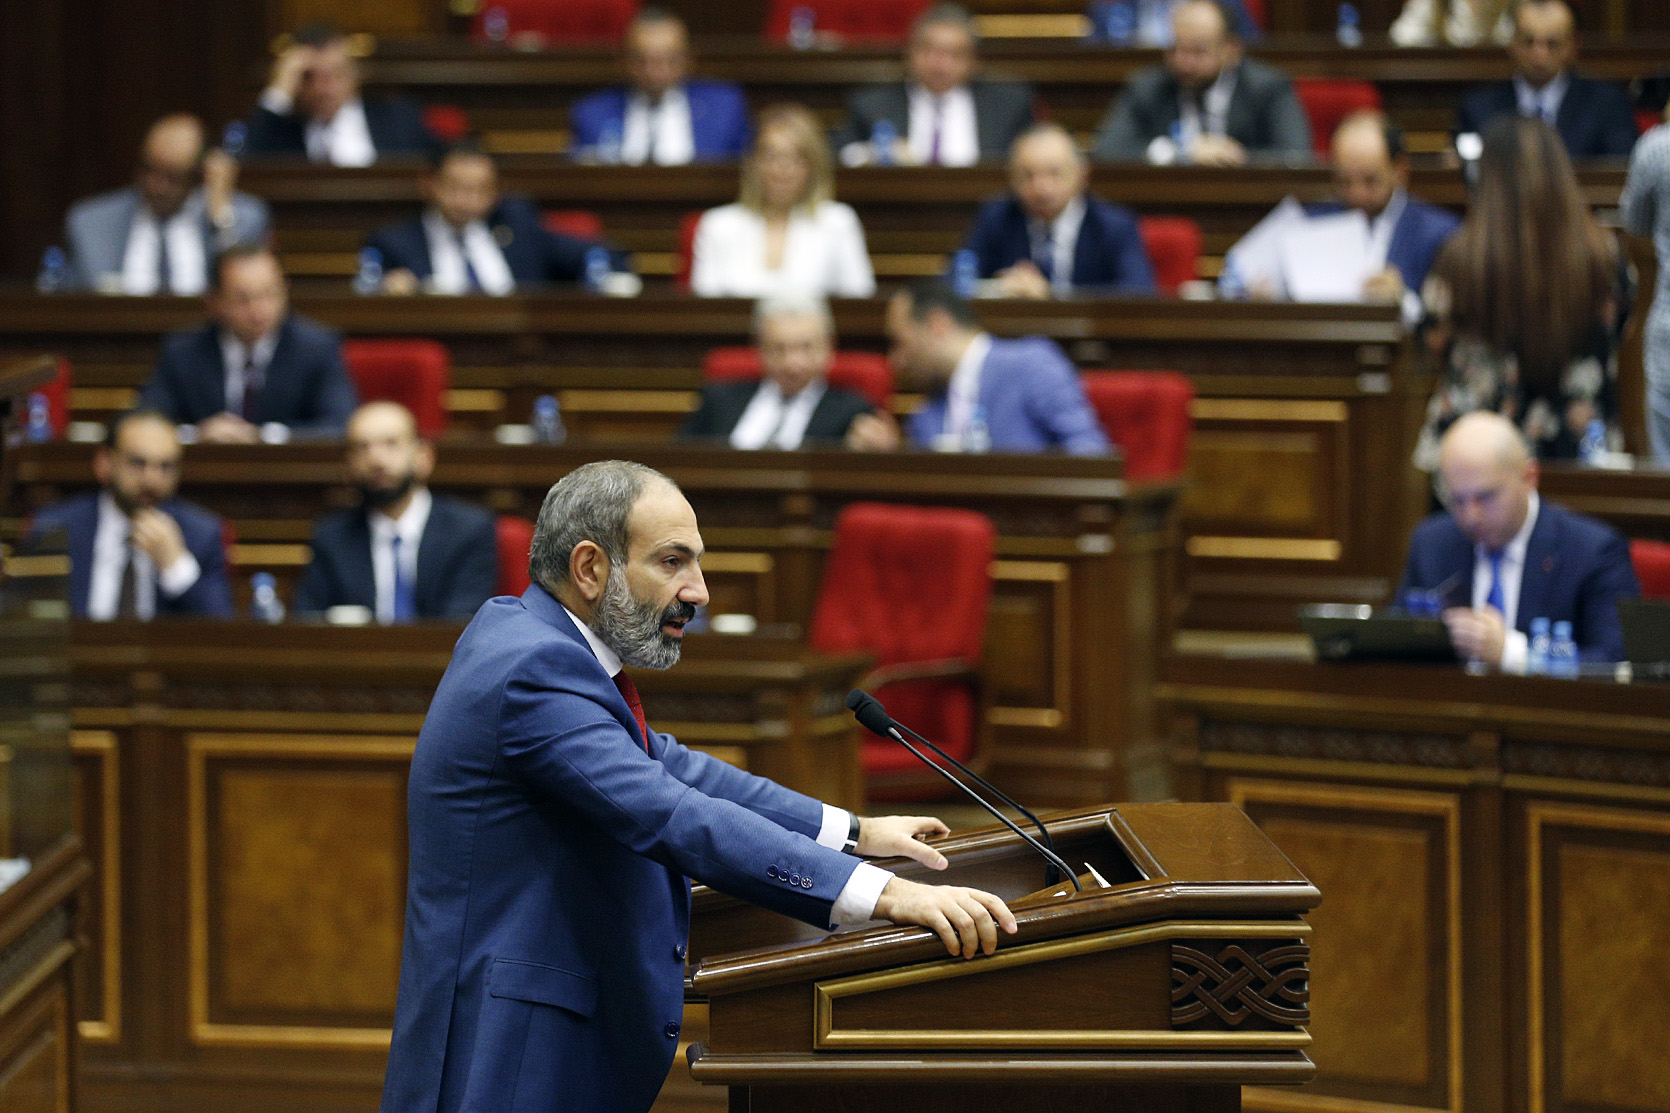 Парламент Армении принял программу правительства